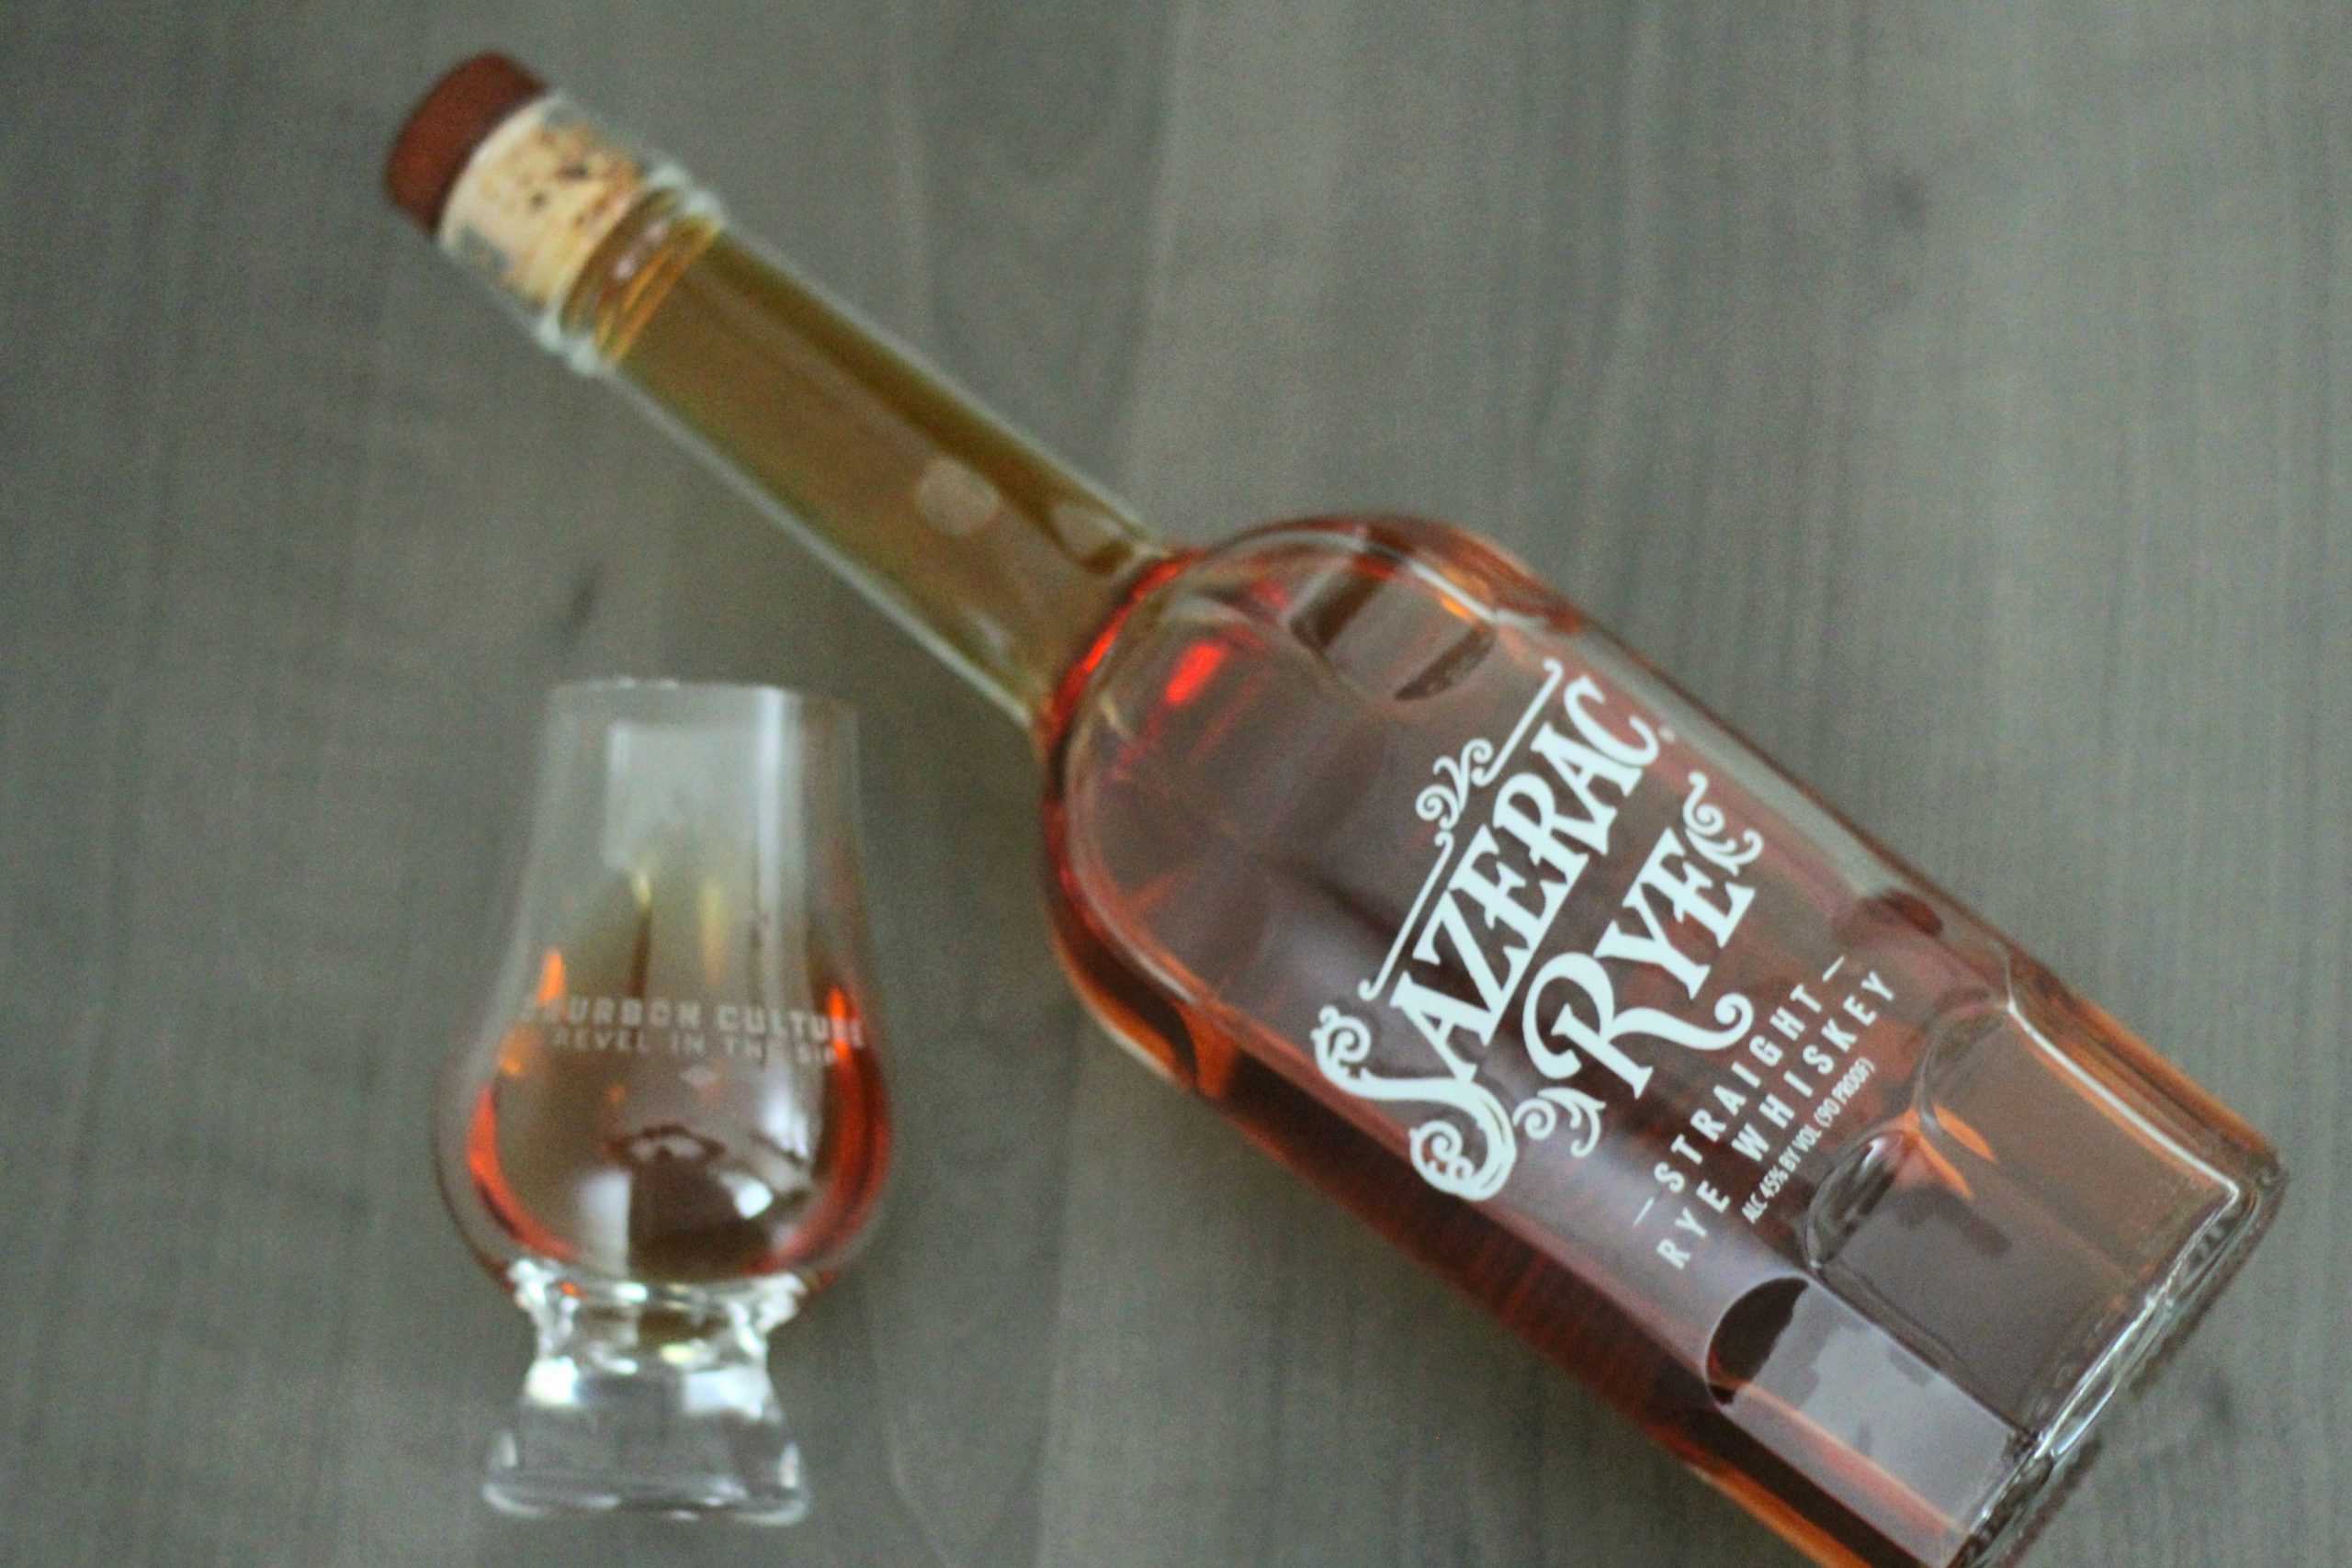 Sazerac Rye Whiskey Review